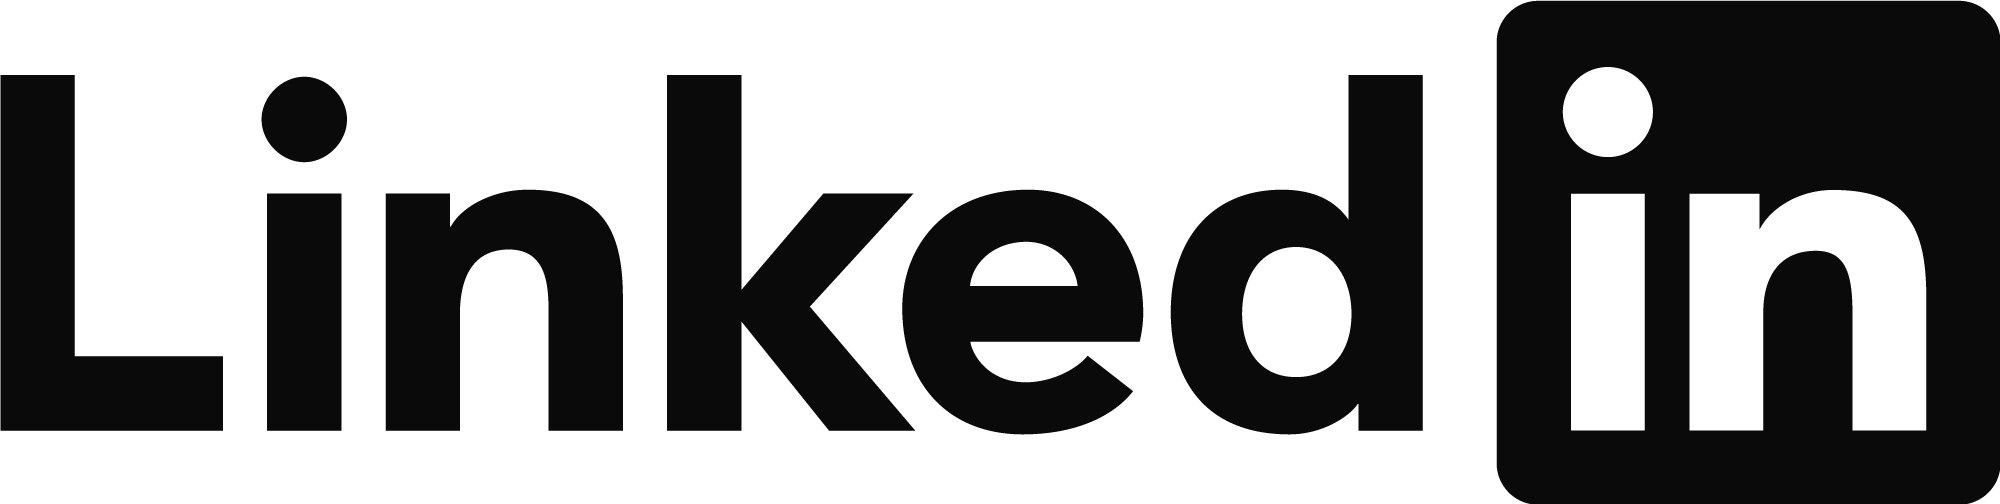 Linkedin Logo Black